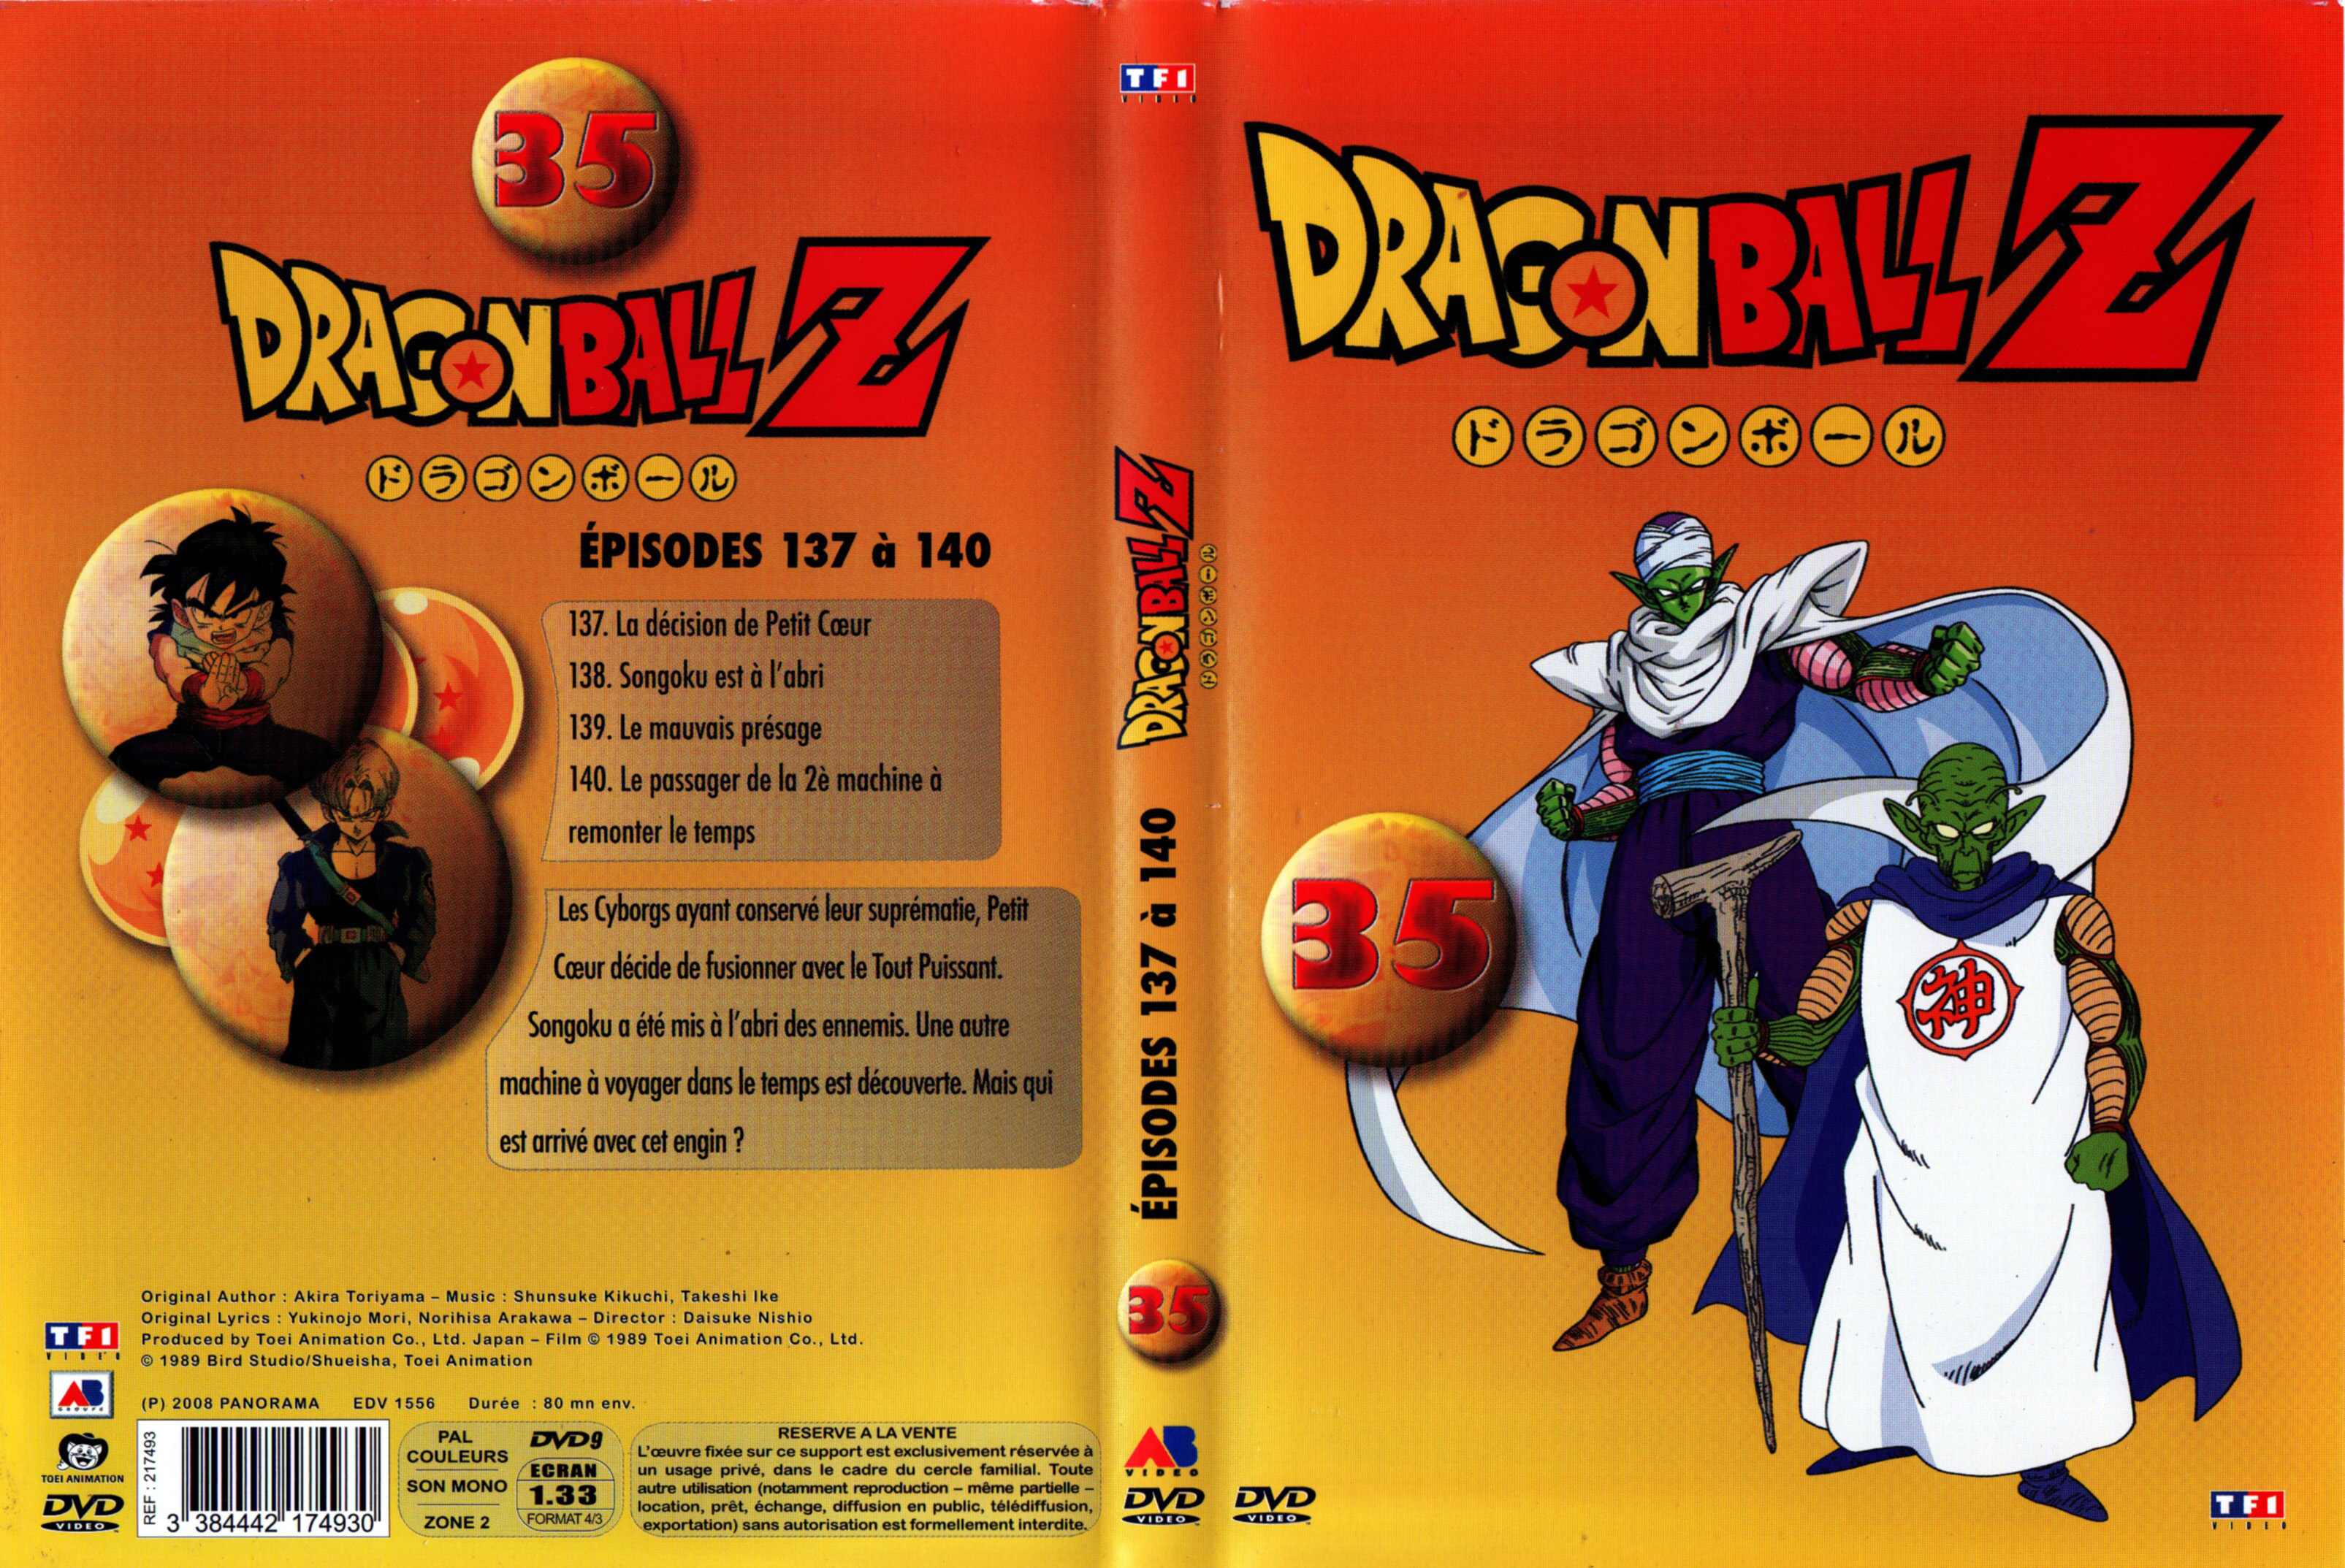 Jaquette DVD Dragon Ball Z vol 35 v2